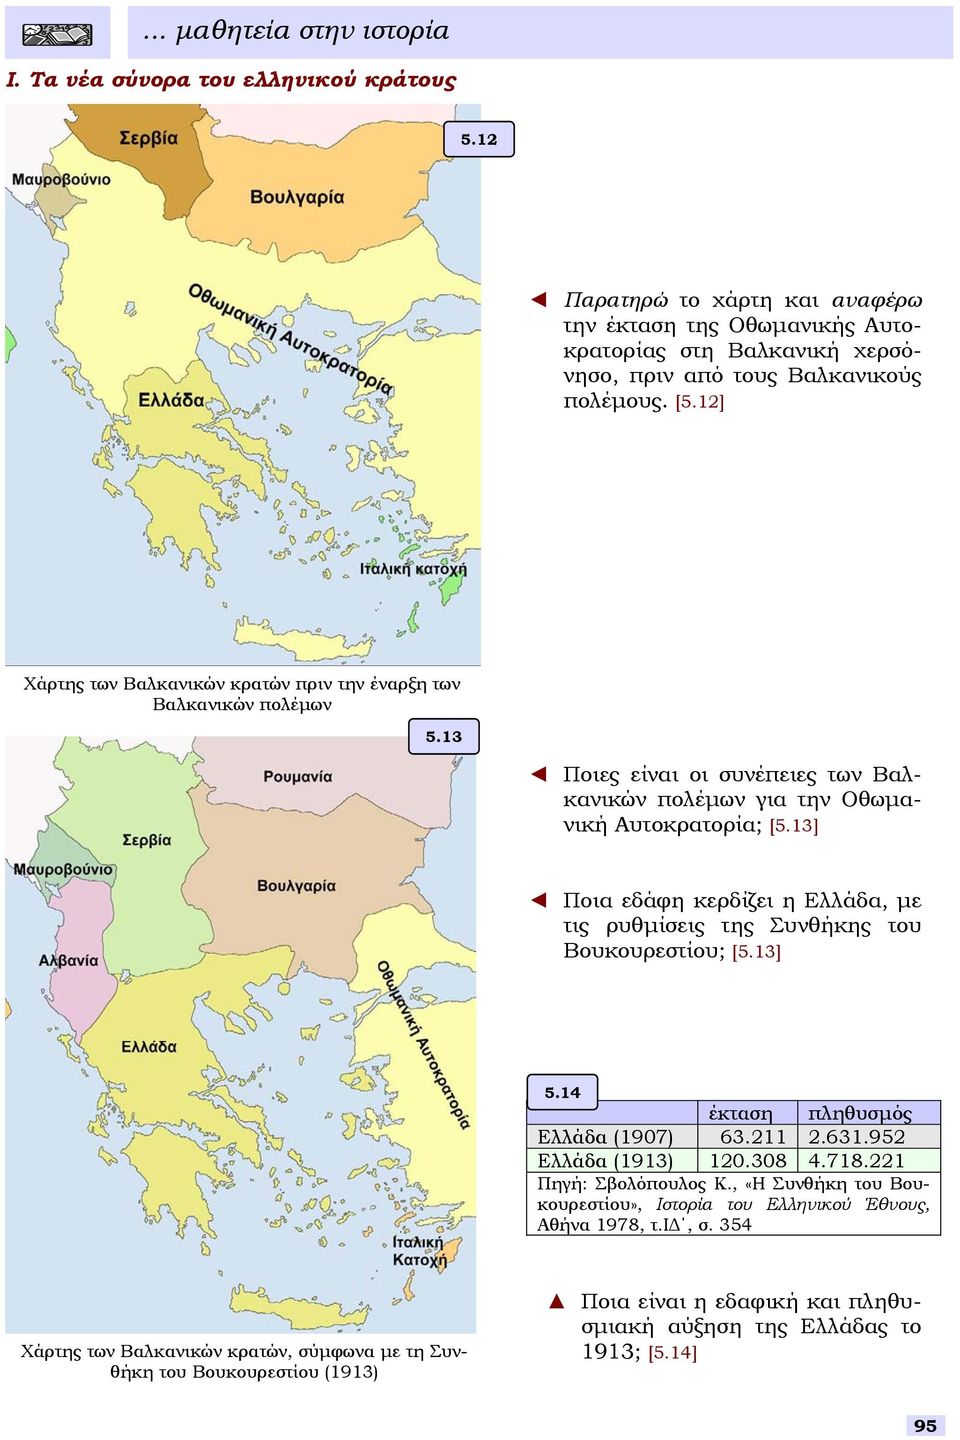 13] Ποια εδάφη κερδίζει η Ελλάδα, µε τις ρυθµίεις της Συνθήκης του Βουκουρετίου; [5.13] 5.14 έκταη πληθυµός Ελλάδα (1907) 63.211 2.631.952 Ελλάδα (1913) 120.308 4.718.